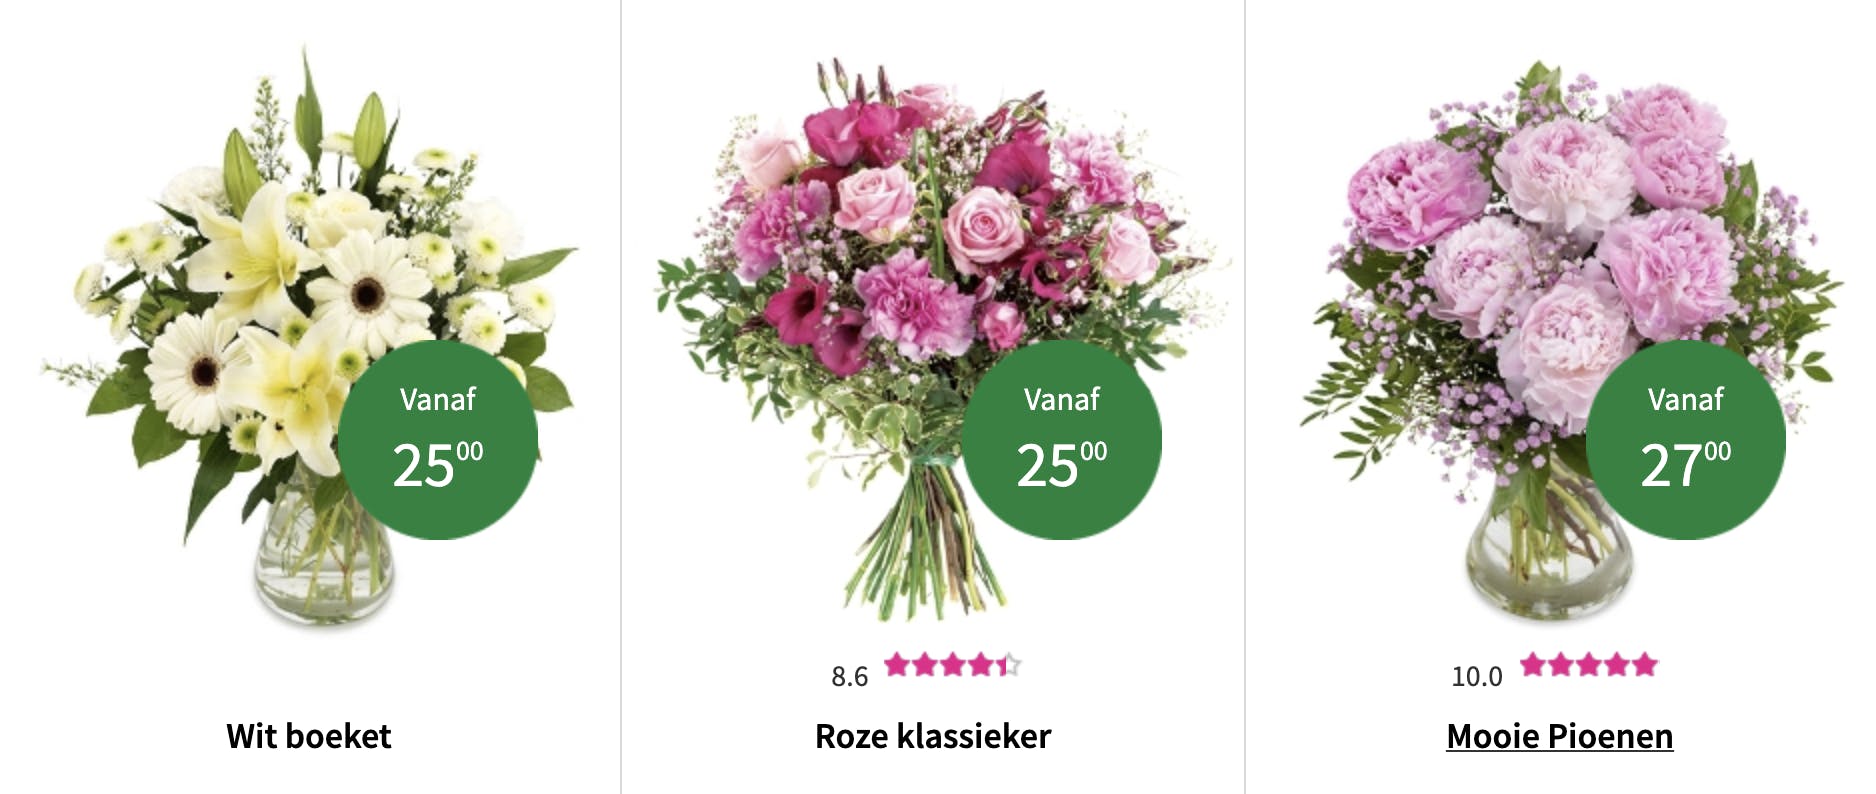 Bloemen online bestellen en aan huis laten leveren in heel België. Top 9 tips voor prachtige bloemen in huis deze zomer bloemen selectie